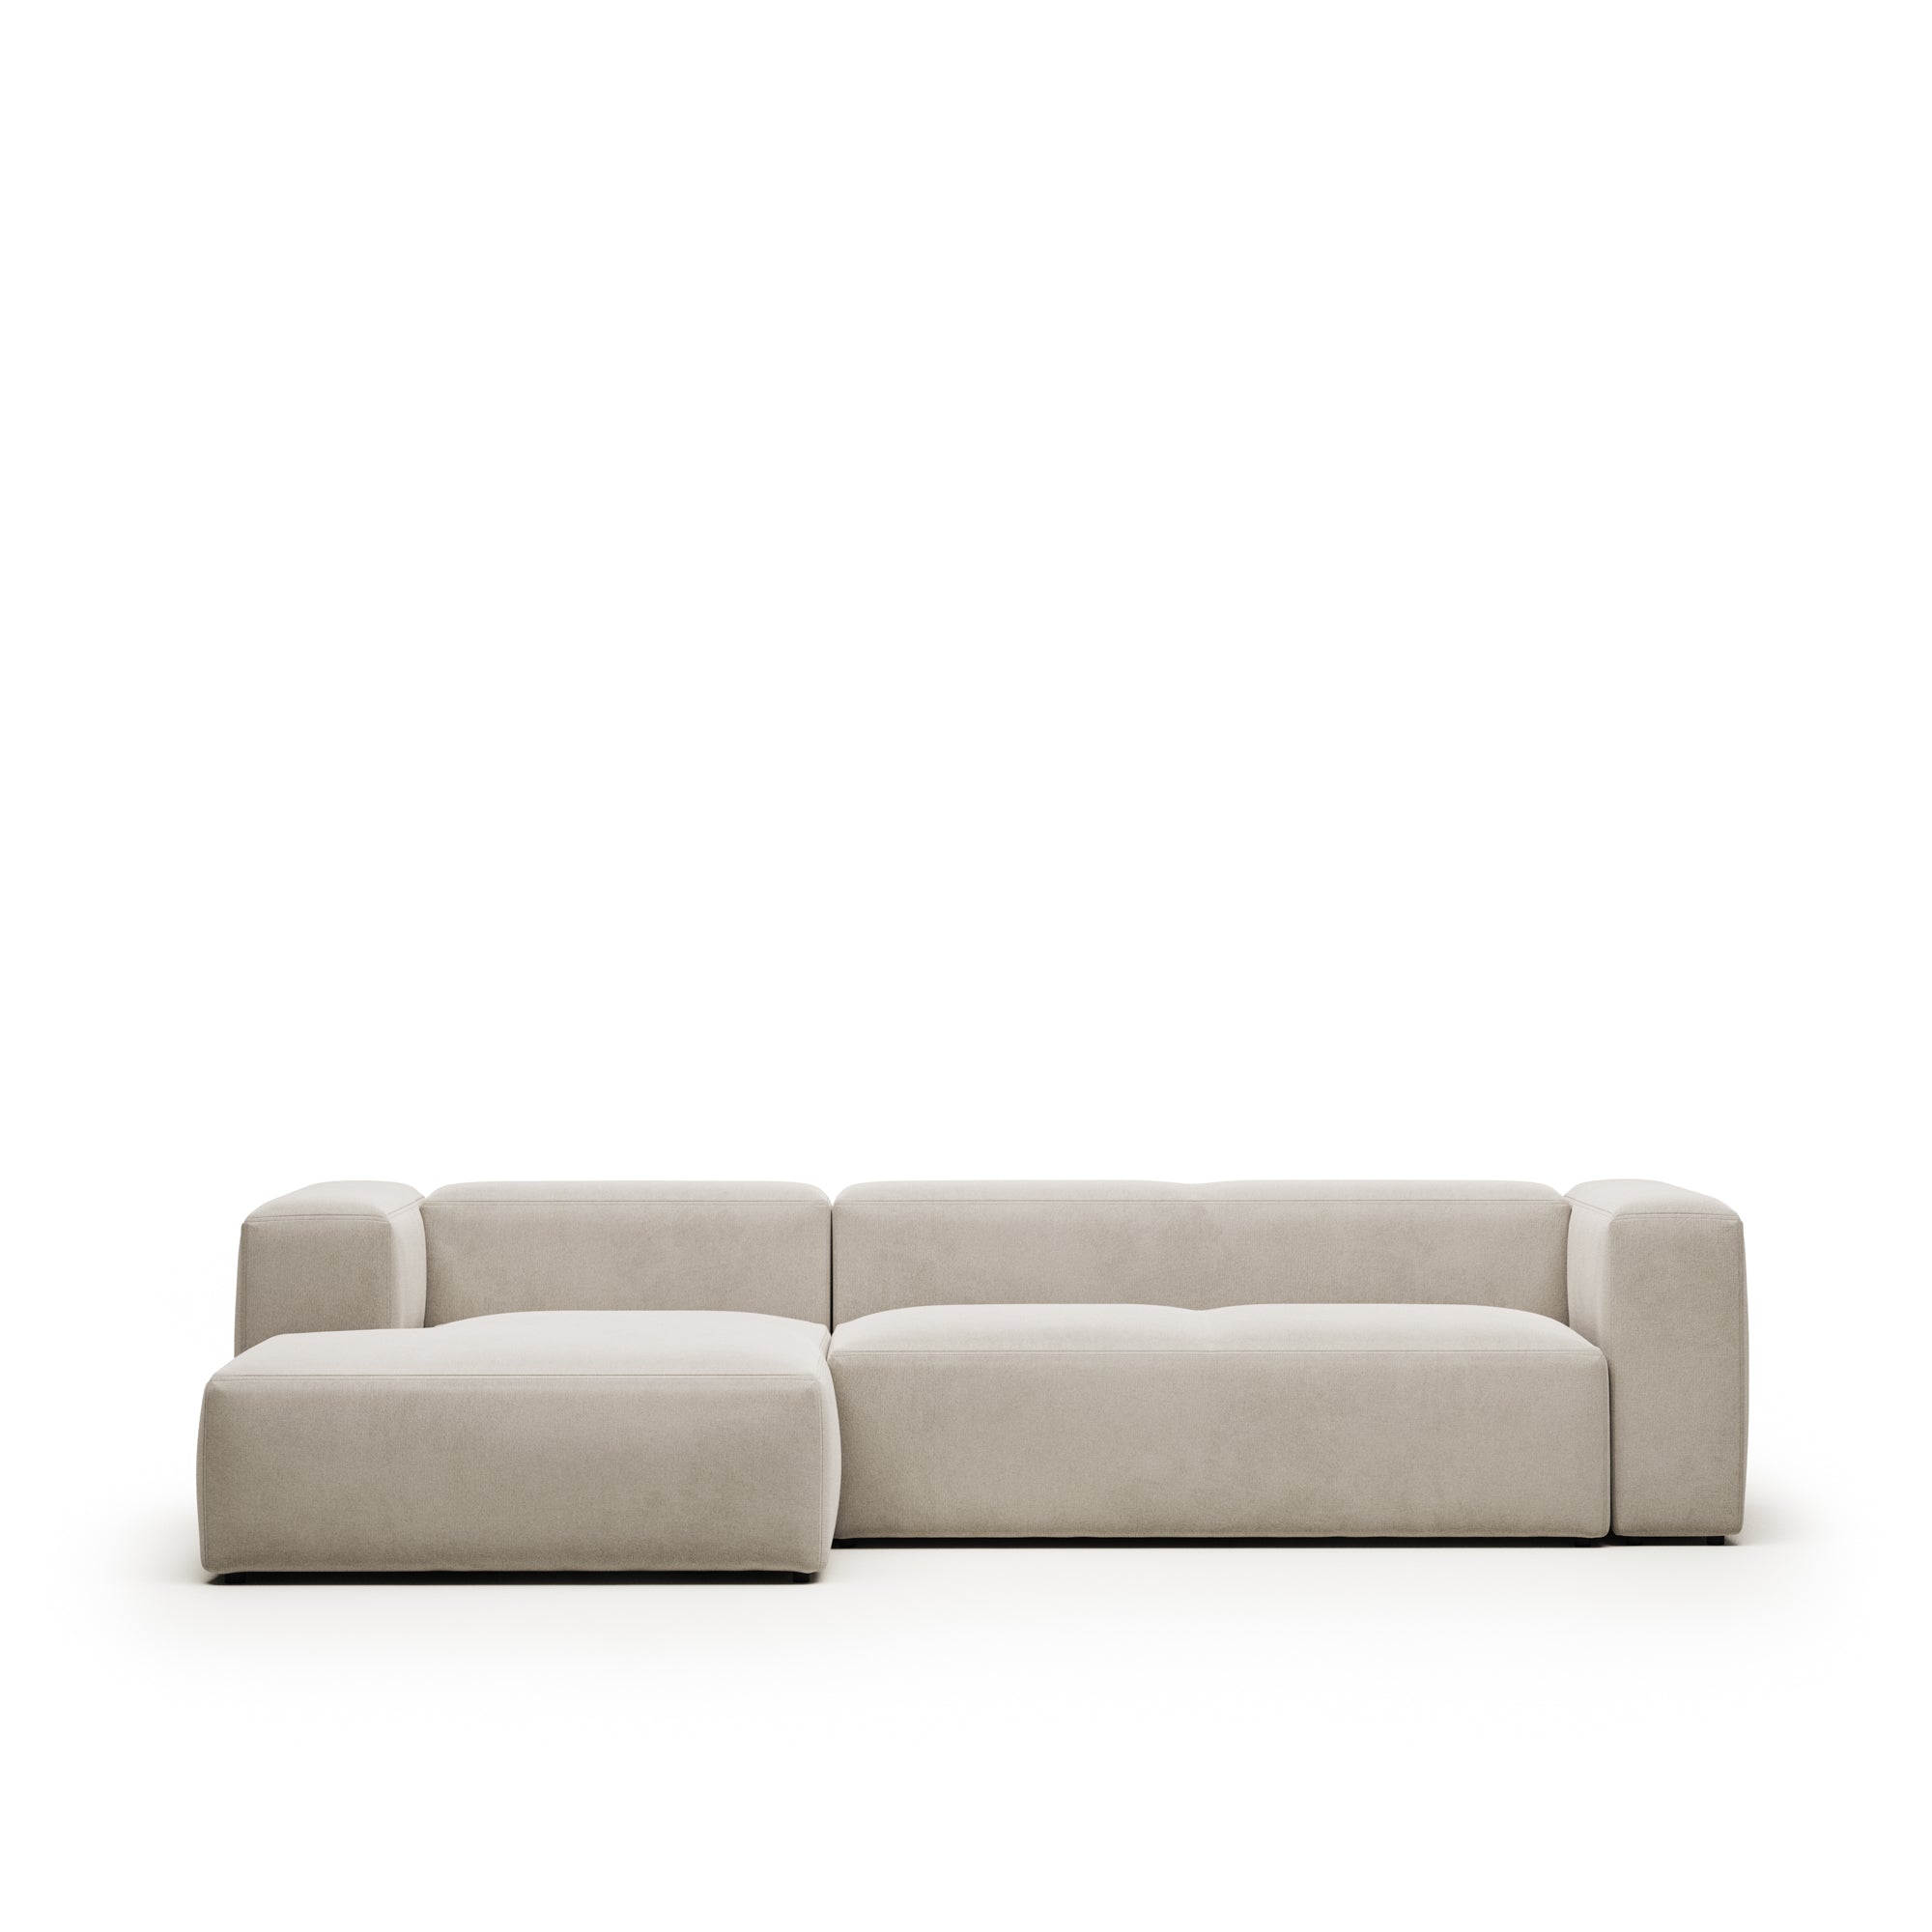 Blok 3 személyes kanapé bal oldali fekvőfotellel, bézs színben, 300 cm